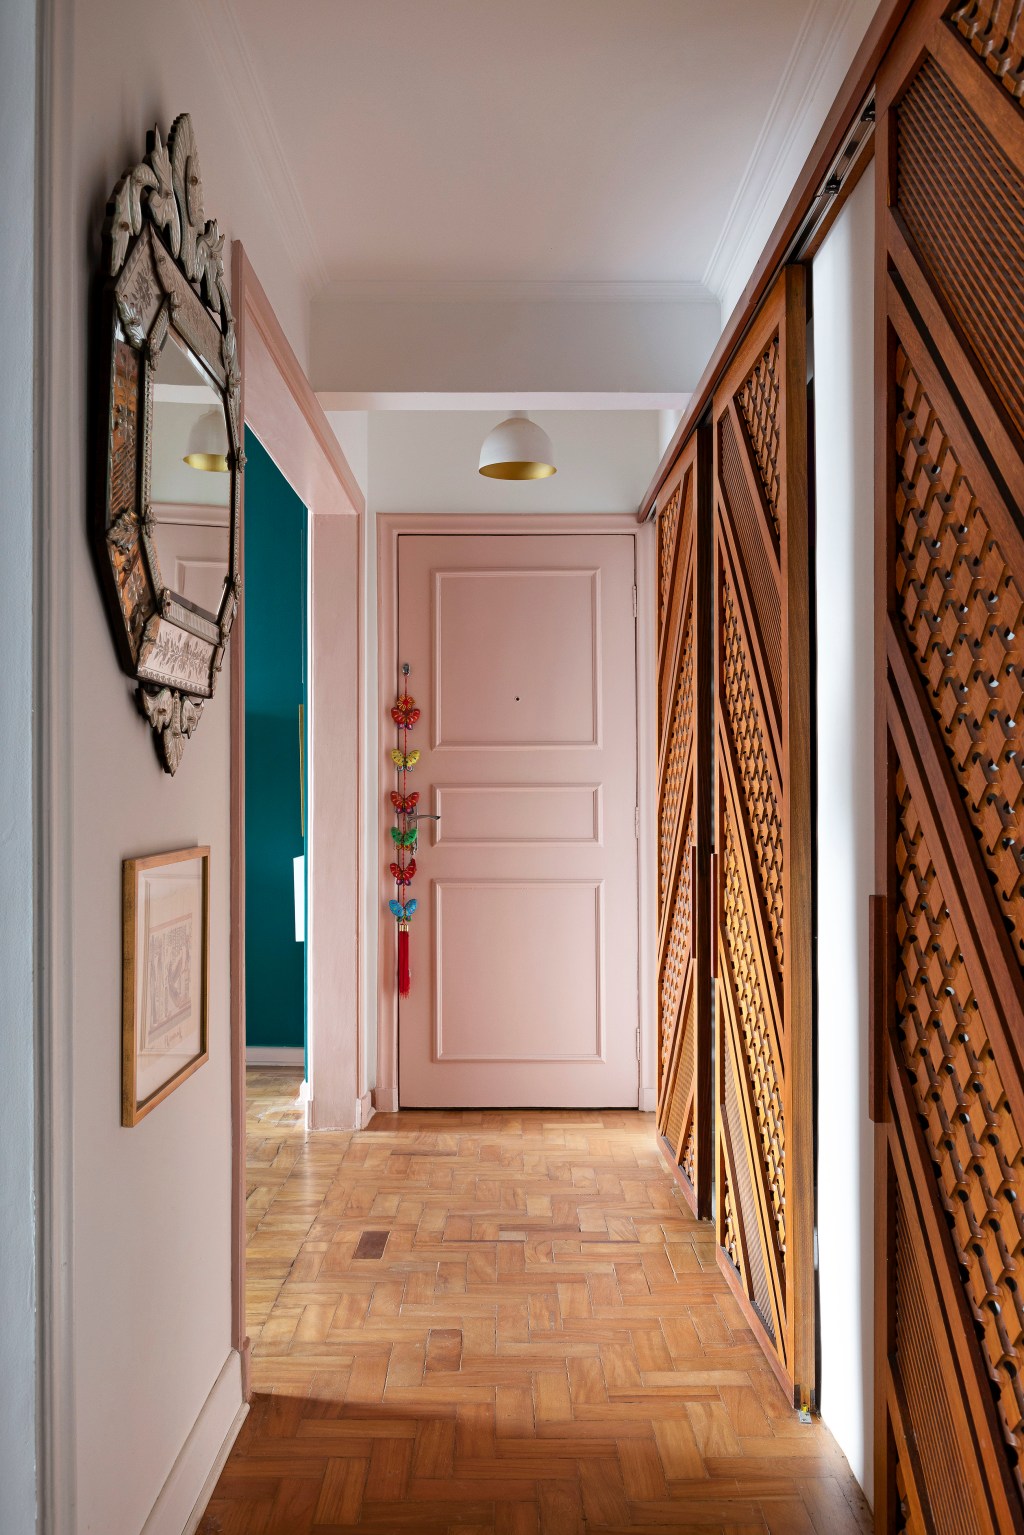 Apê de 120 m² em edifício icônico de São Paulo é repleto de cor e estampas. Projeto de Pílula Antropofágik Arquitetura. Na foto, corredor com porta rosa, esquadrias de madeira e espelho.